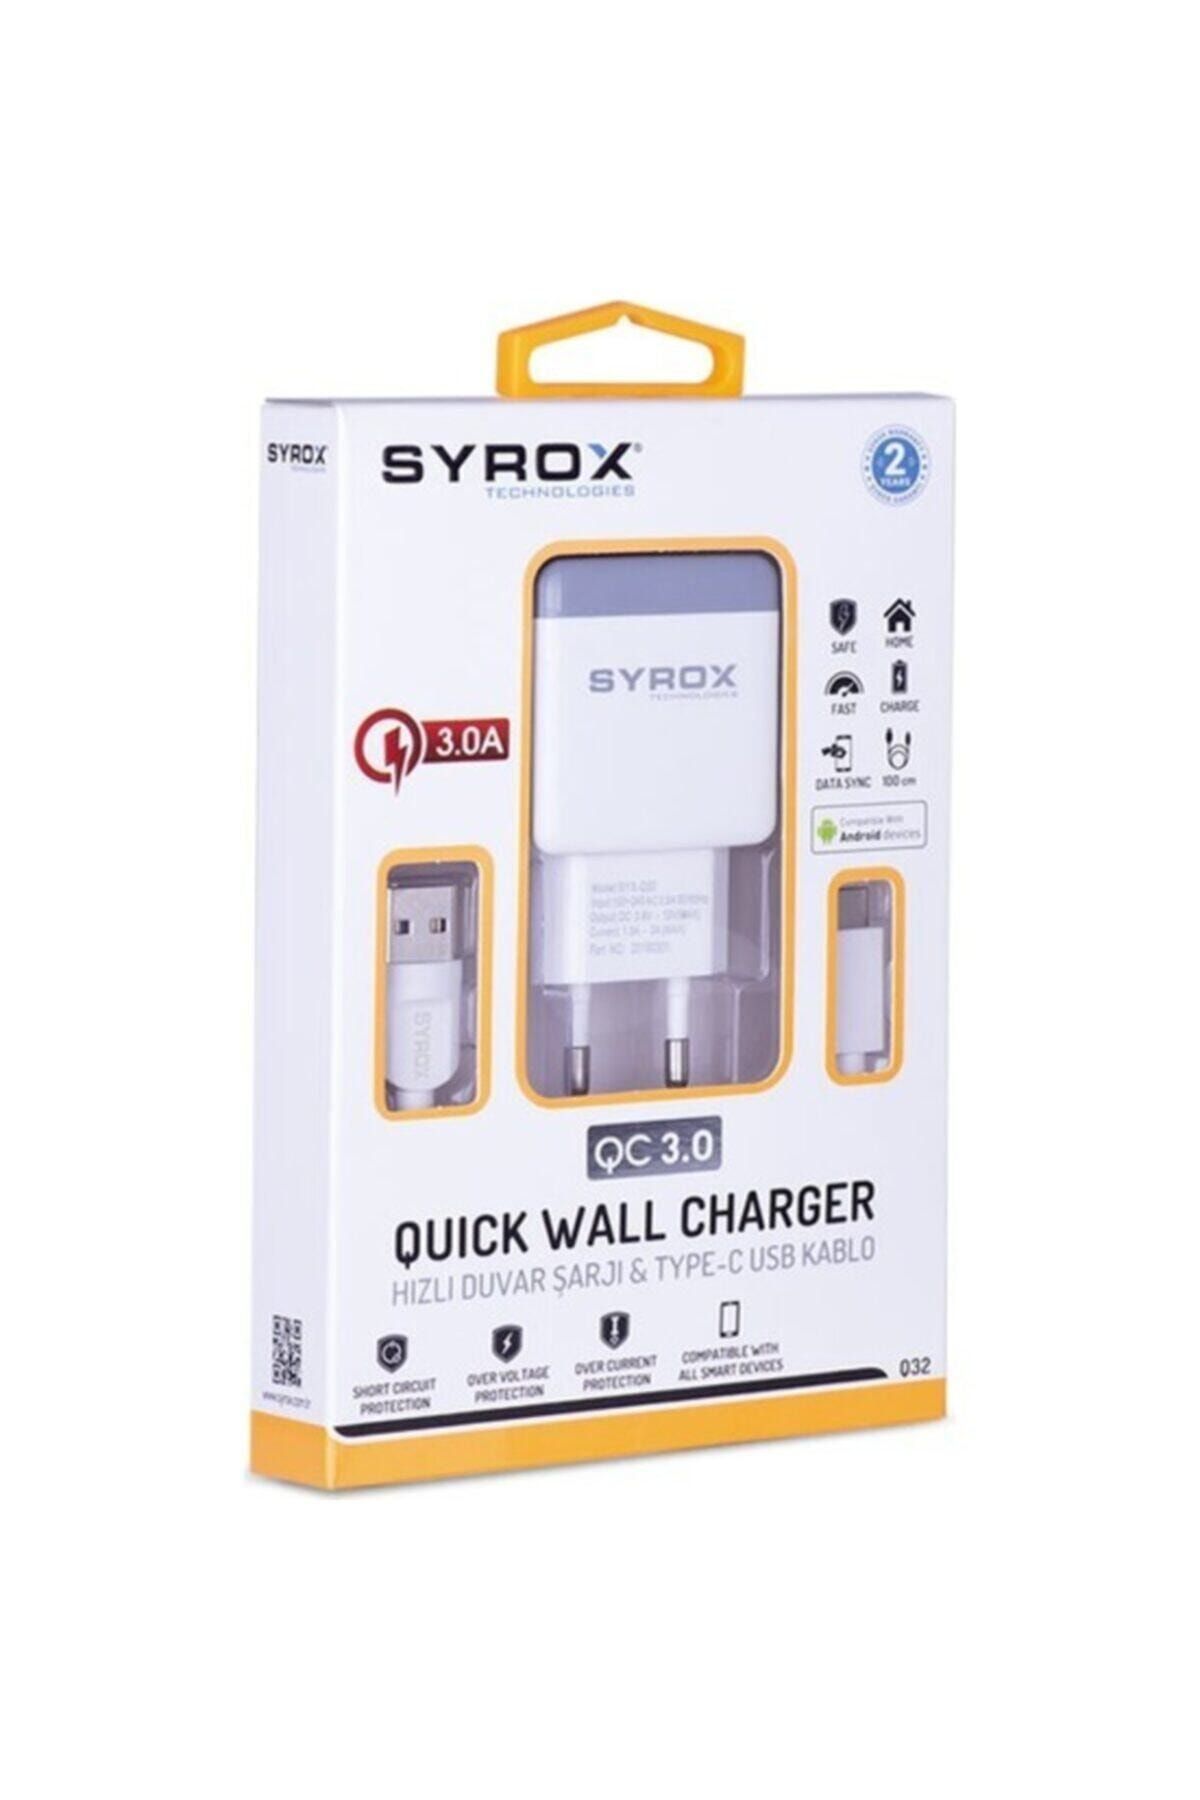 Syrox Samsung S20+ Bts Edition Type-c Şarj Cihazı 3.0a Ultra Hızlı+kablo Koruyucu Hediye